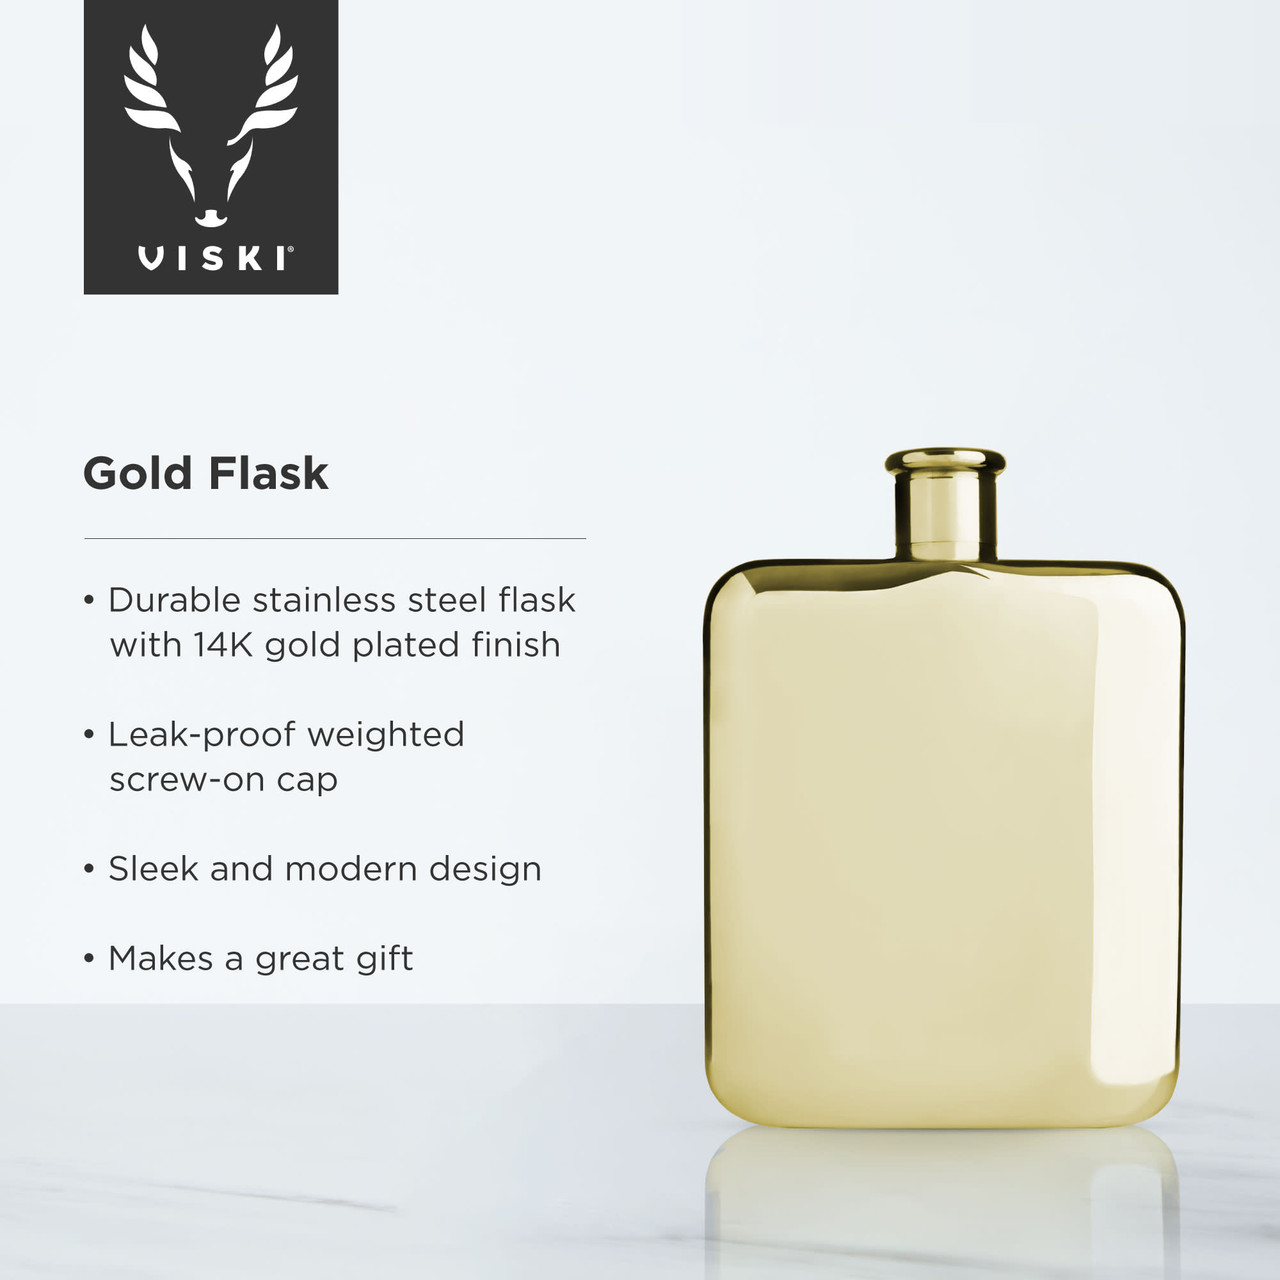 Gold Flask by Viski®